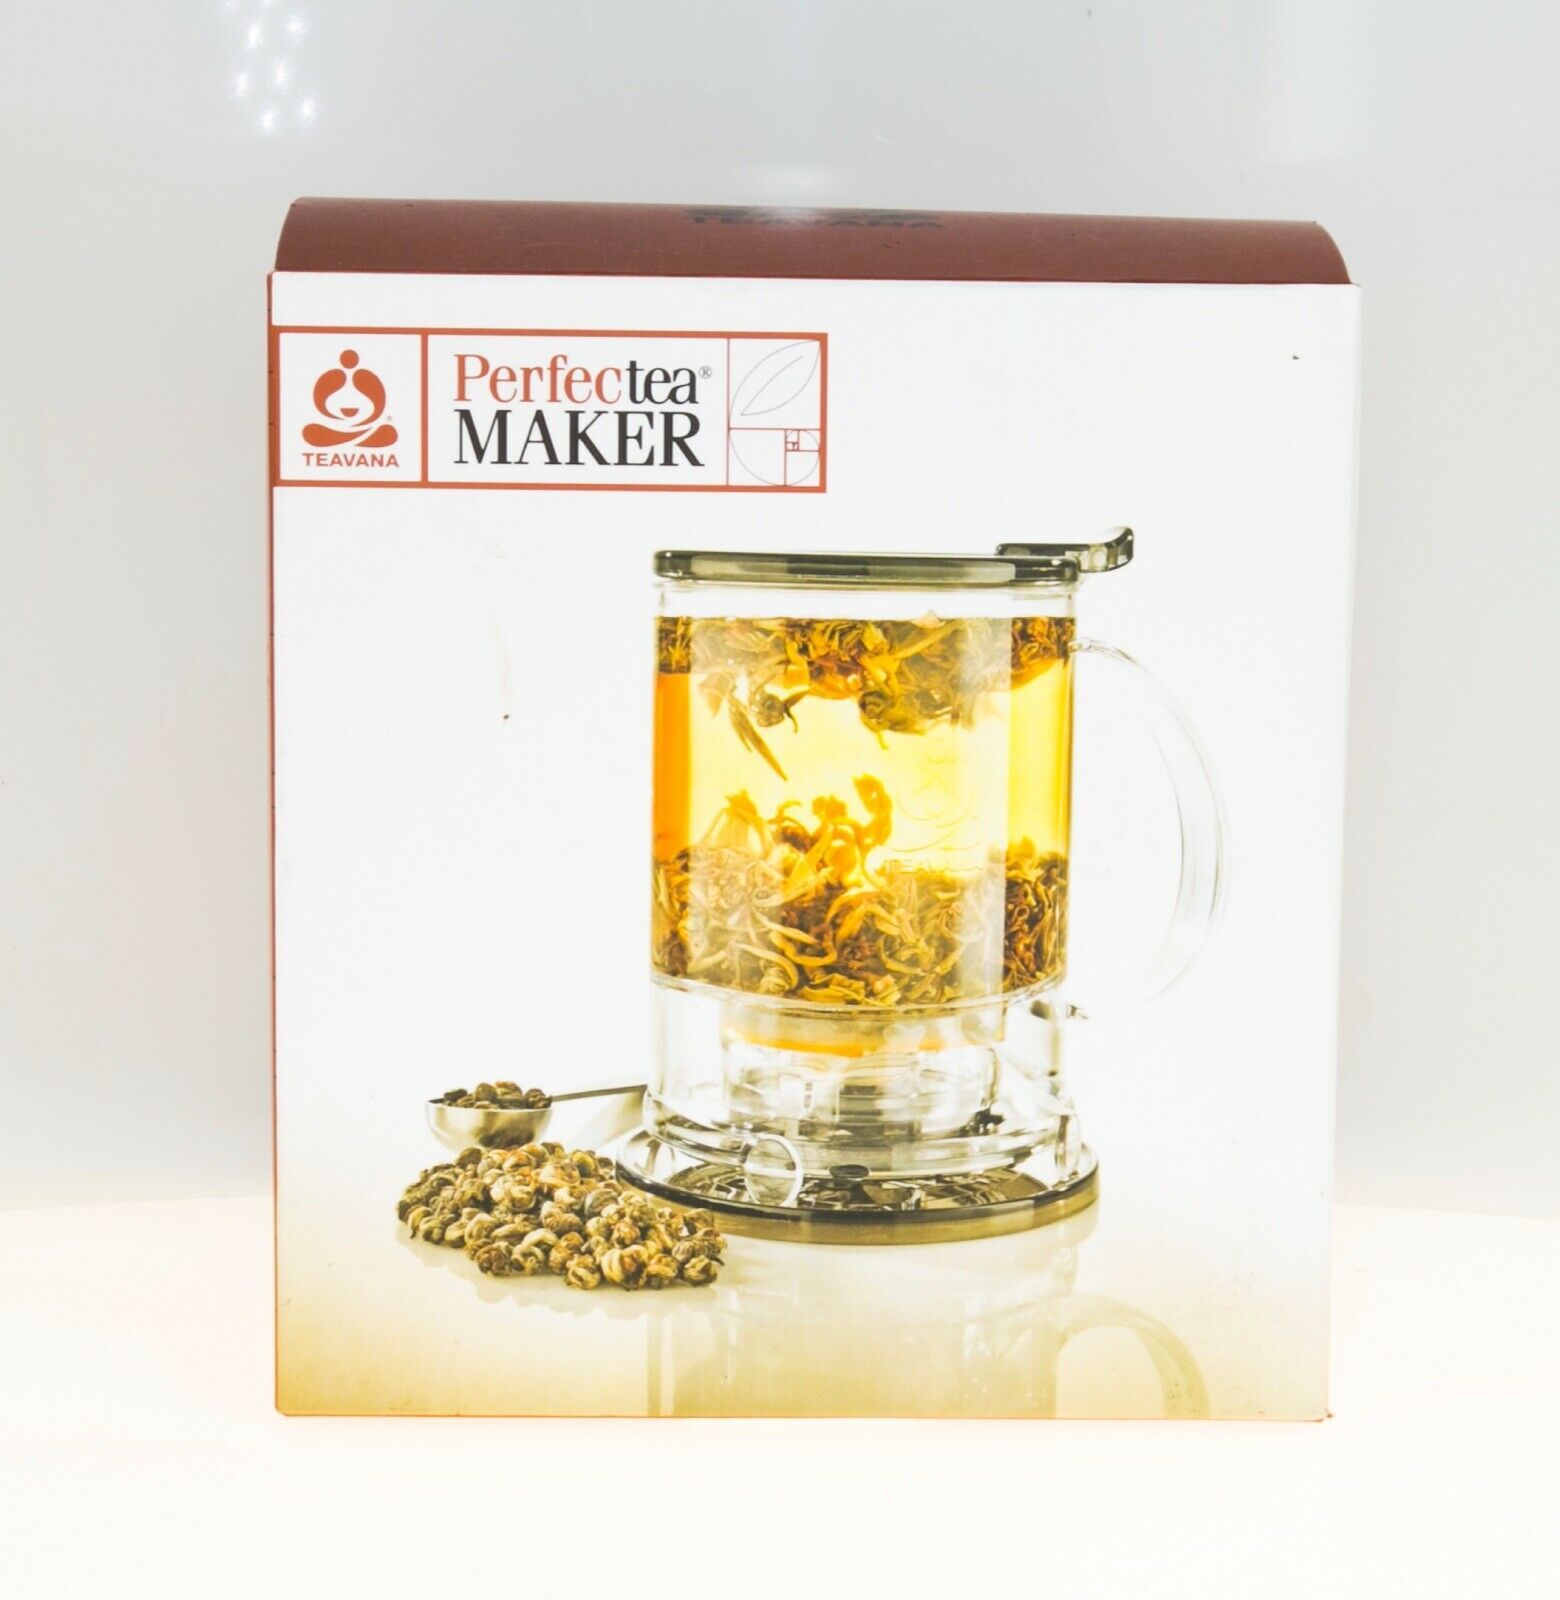 Teavana Perfectea Maker 16 Oz Perfect Loose Leaf Tea Maker Brewer